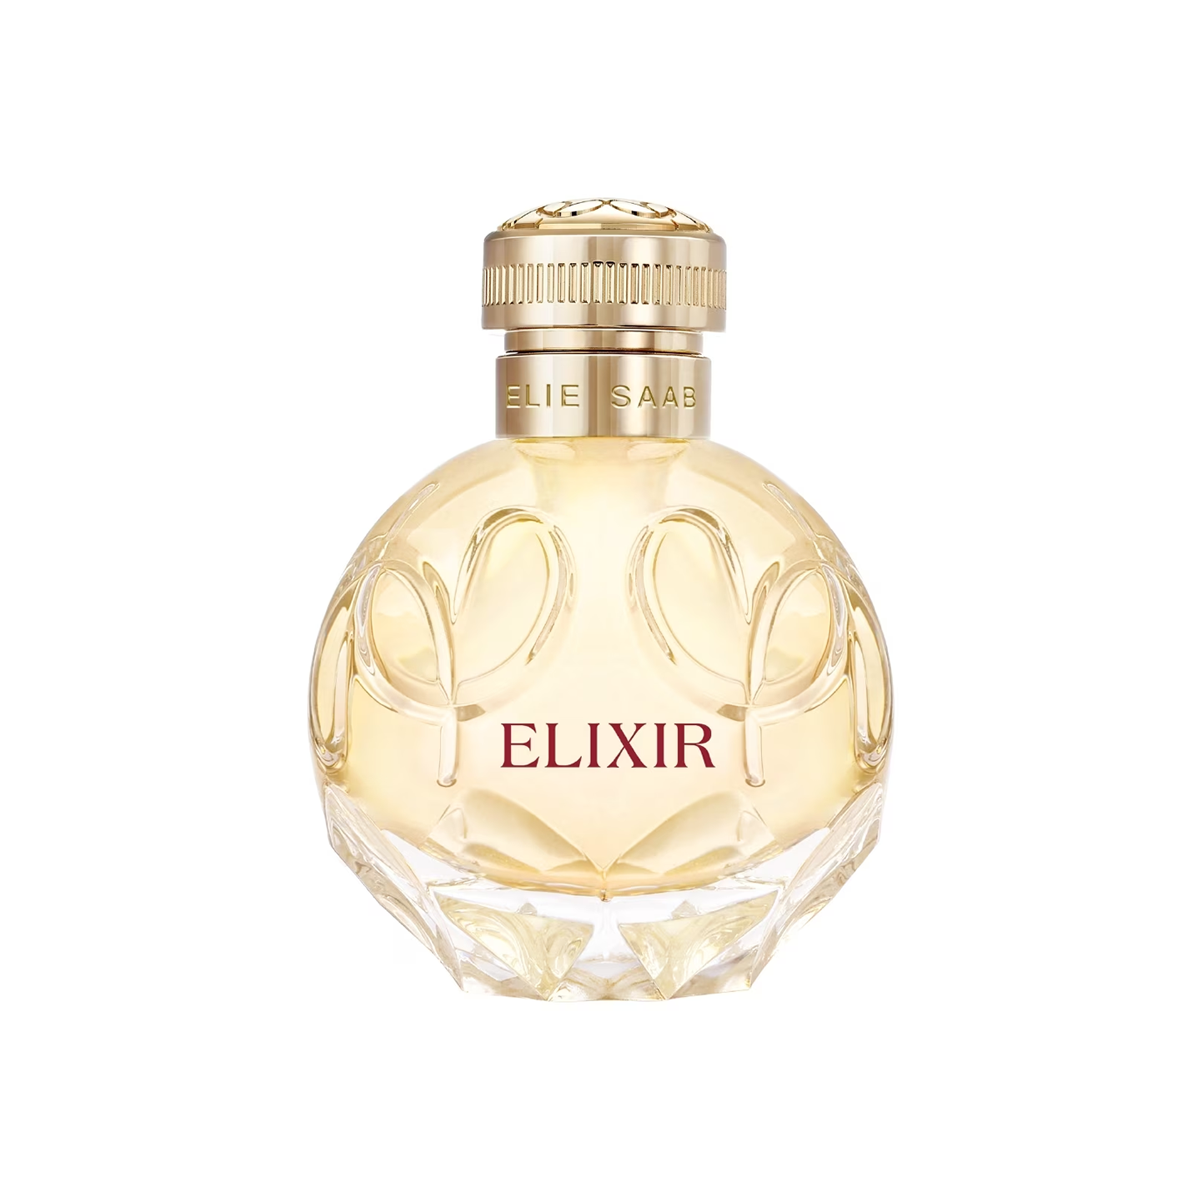 Elixir Eau de Parfum ELIE & SAAB | Parfumerie Burdin